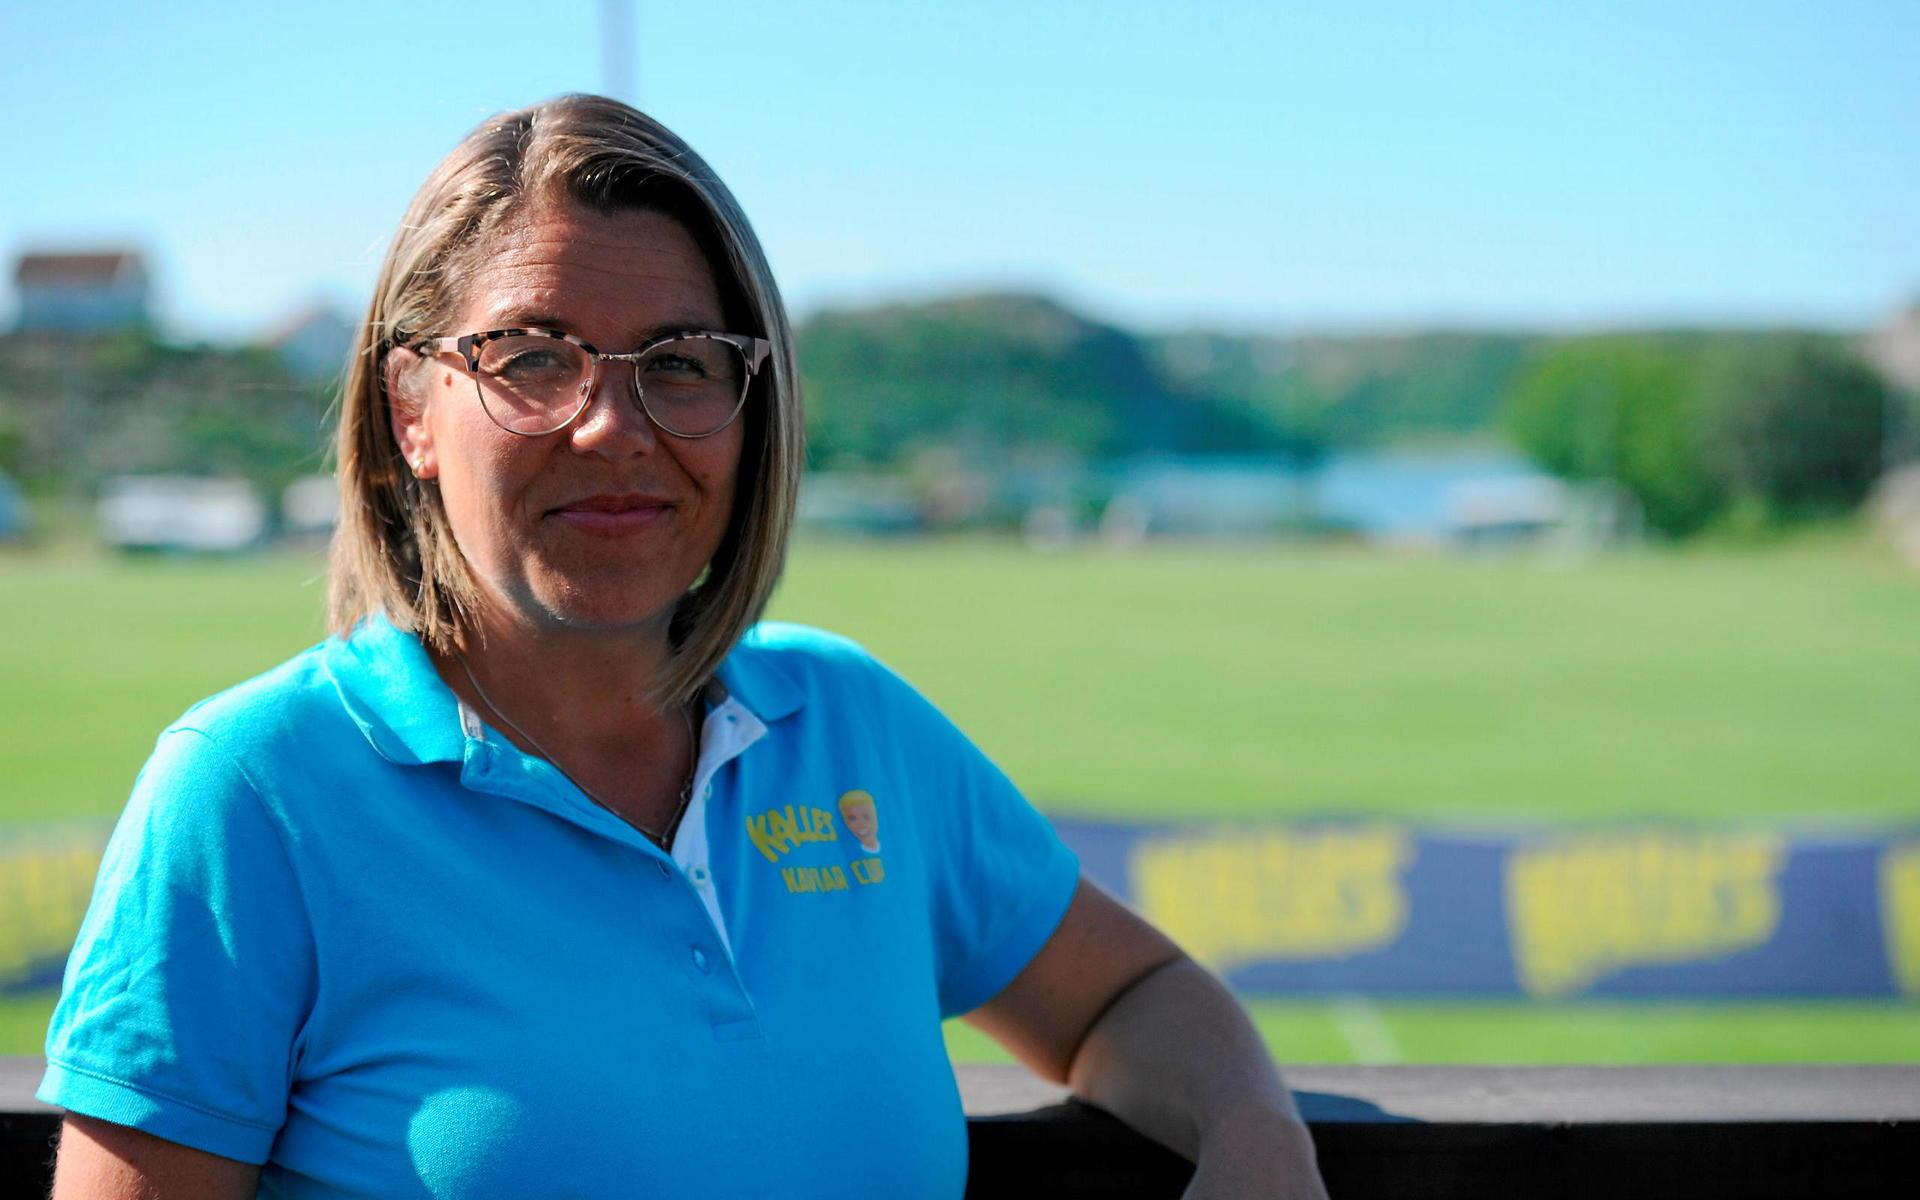 Cupansvariga Marie Appelgren är glad över att cupen är tillbaka efter två års frånvaro: ”Det är underbart, vi har laddat för det här”, säger hon.